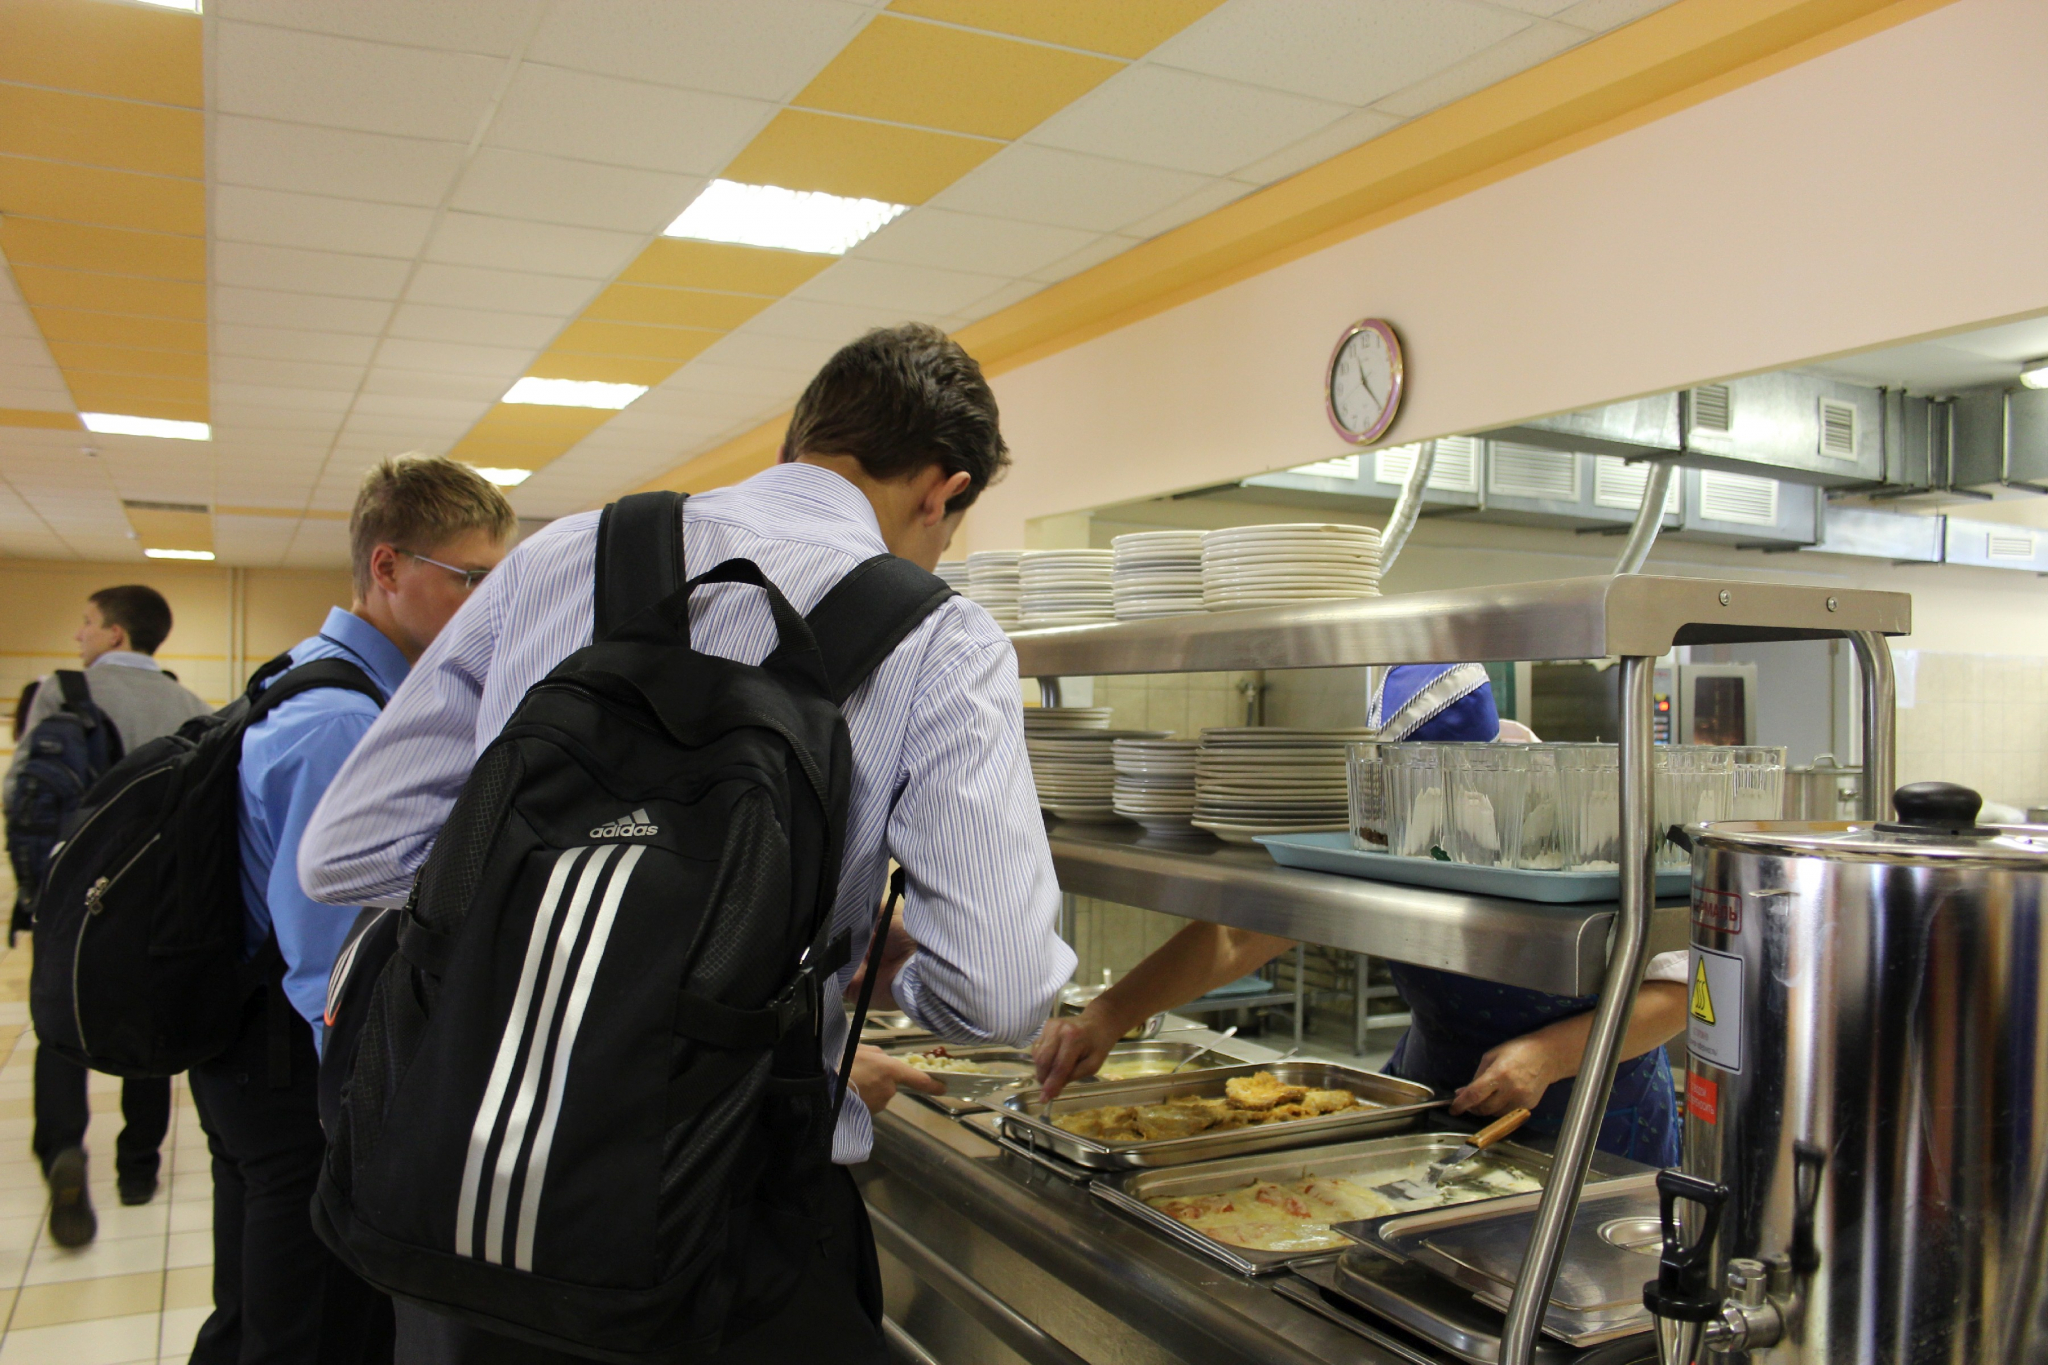 Роспотребнадзор рассказал о недоработанных расписаниях в школах: "10 минут на обед недостаточно"